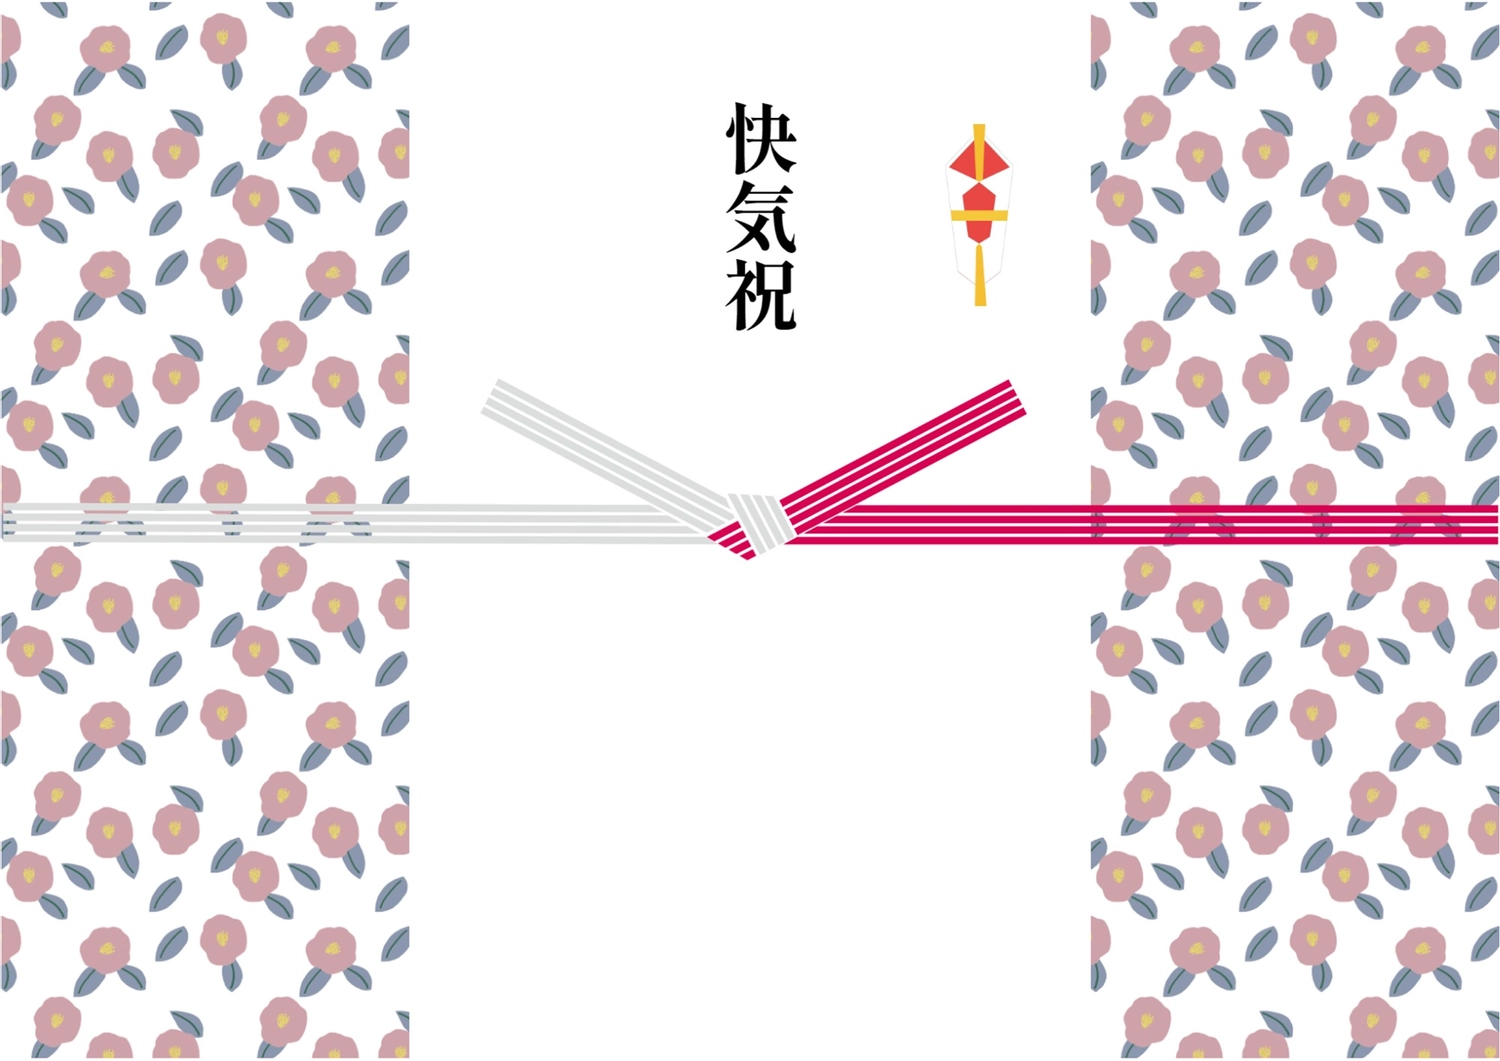 快気祝, the iron, visit, red and white, Sales promotion tool template